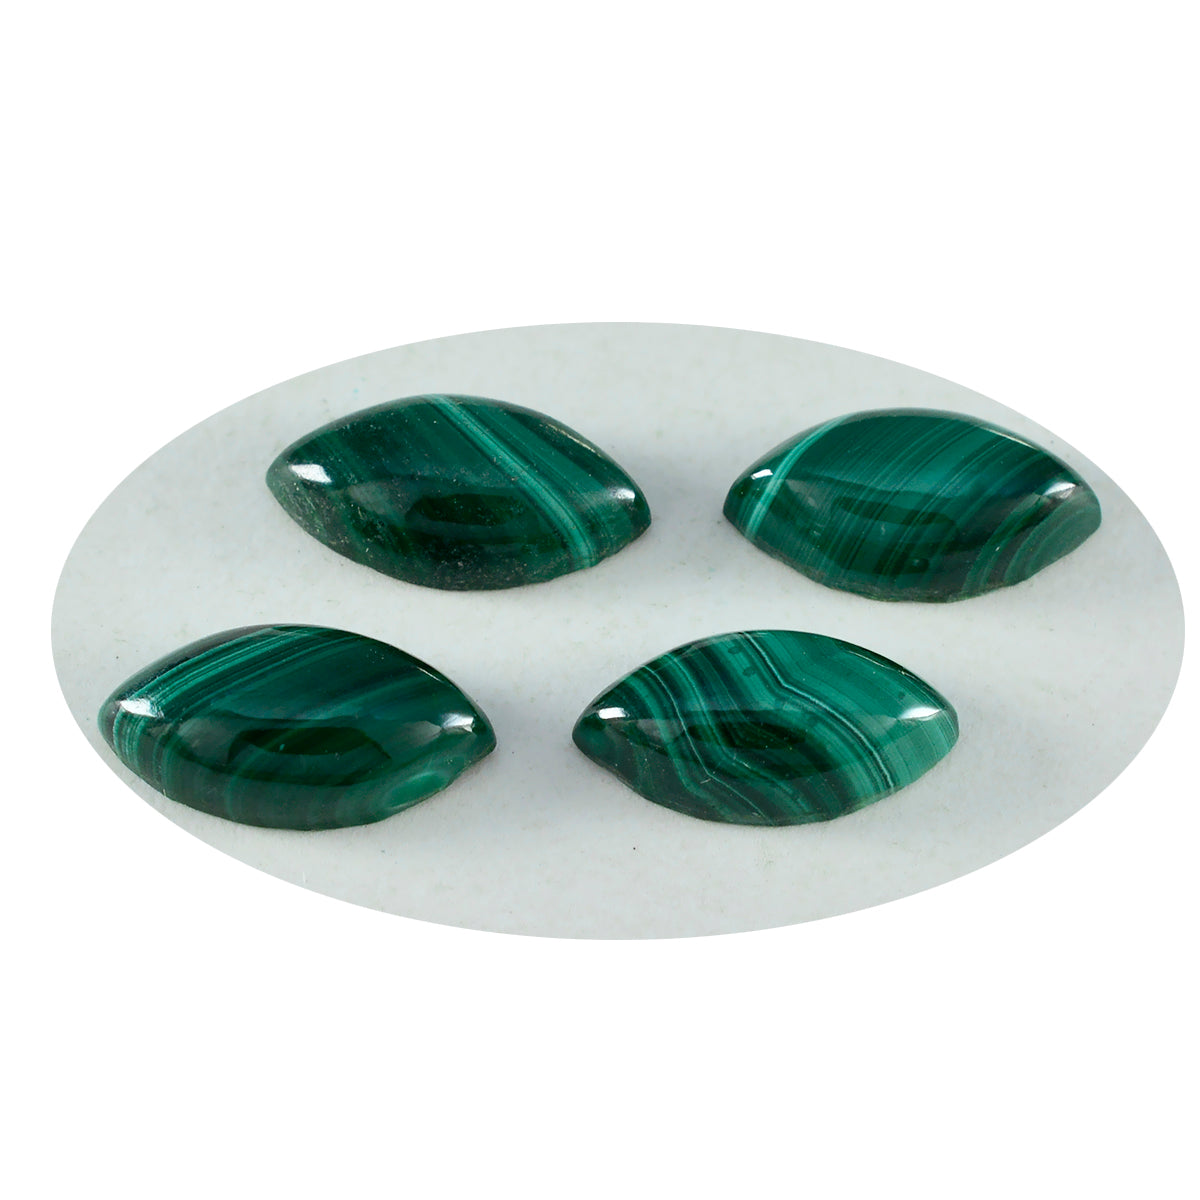 Riyogems 1pc cabochon de malachite verte 10x20mm forme marquise qualité fantastique pierres précieuses en vrac